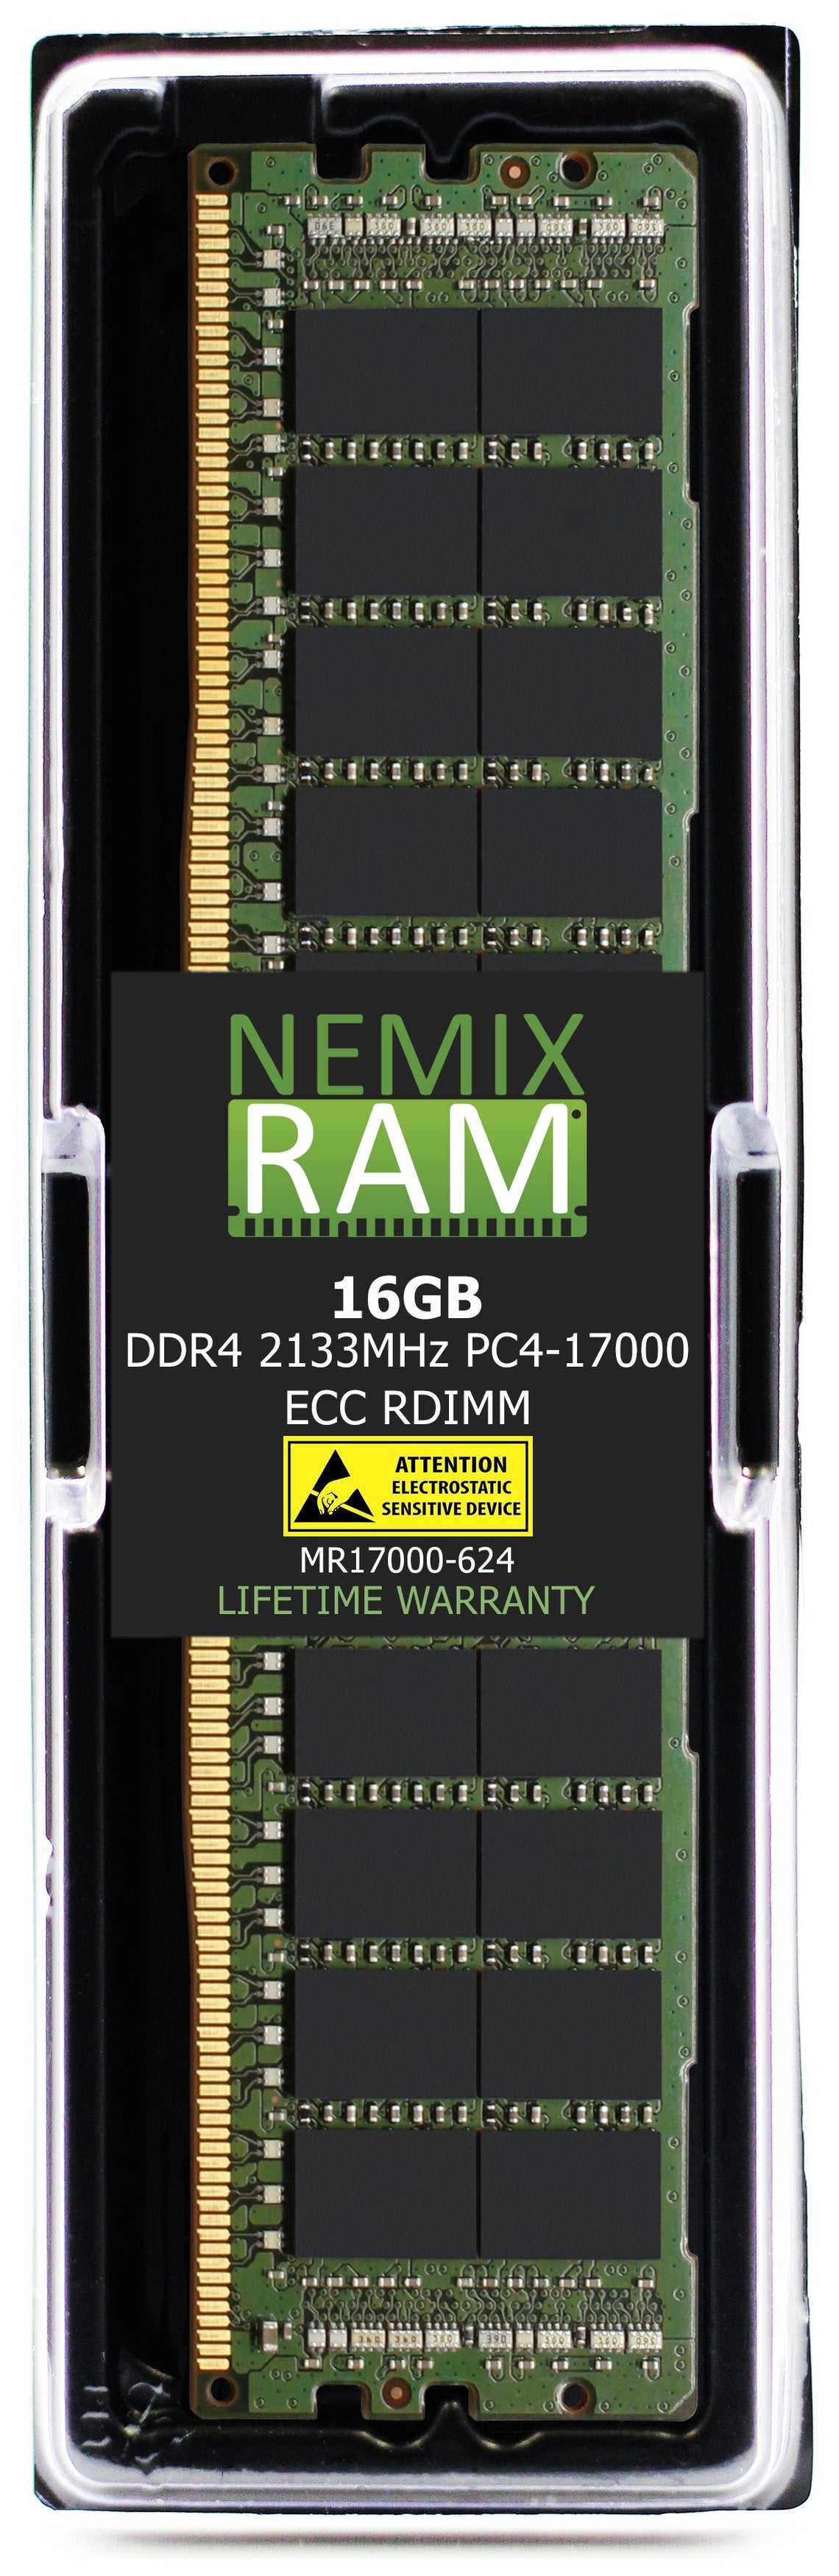 16GB DDR4 2133HZ PC4-17000 RDIMM Compatible with Supermicro MEM-DR416L-HL01-ER21